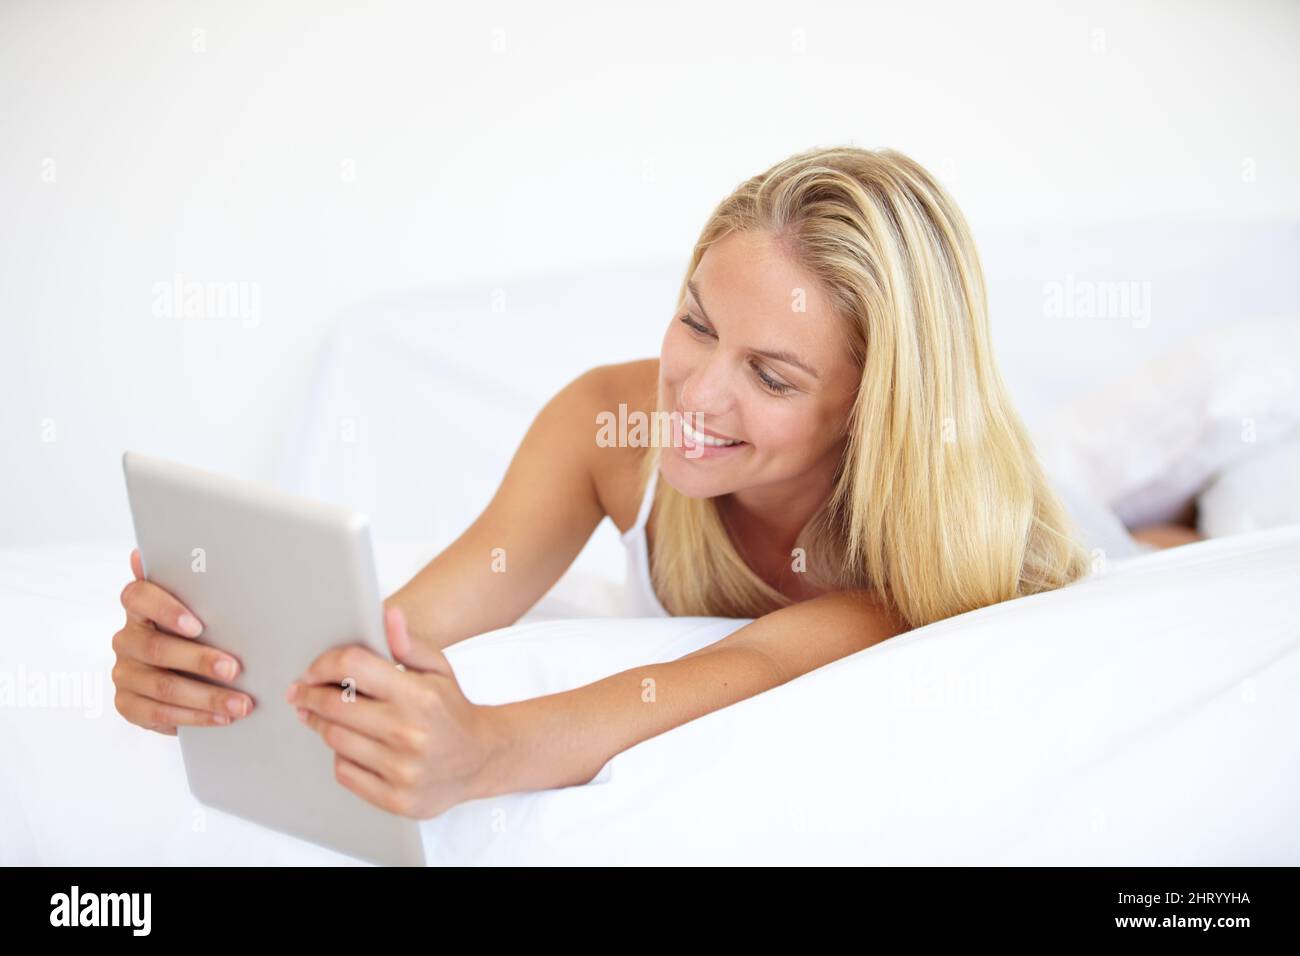 Navigation en toute confort. Une belle jeune femme blonde travaillant sur son pavé numérique tout en étant couché dans le lit. Banque D'Images